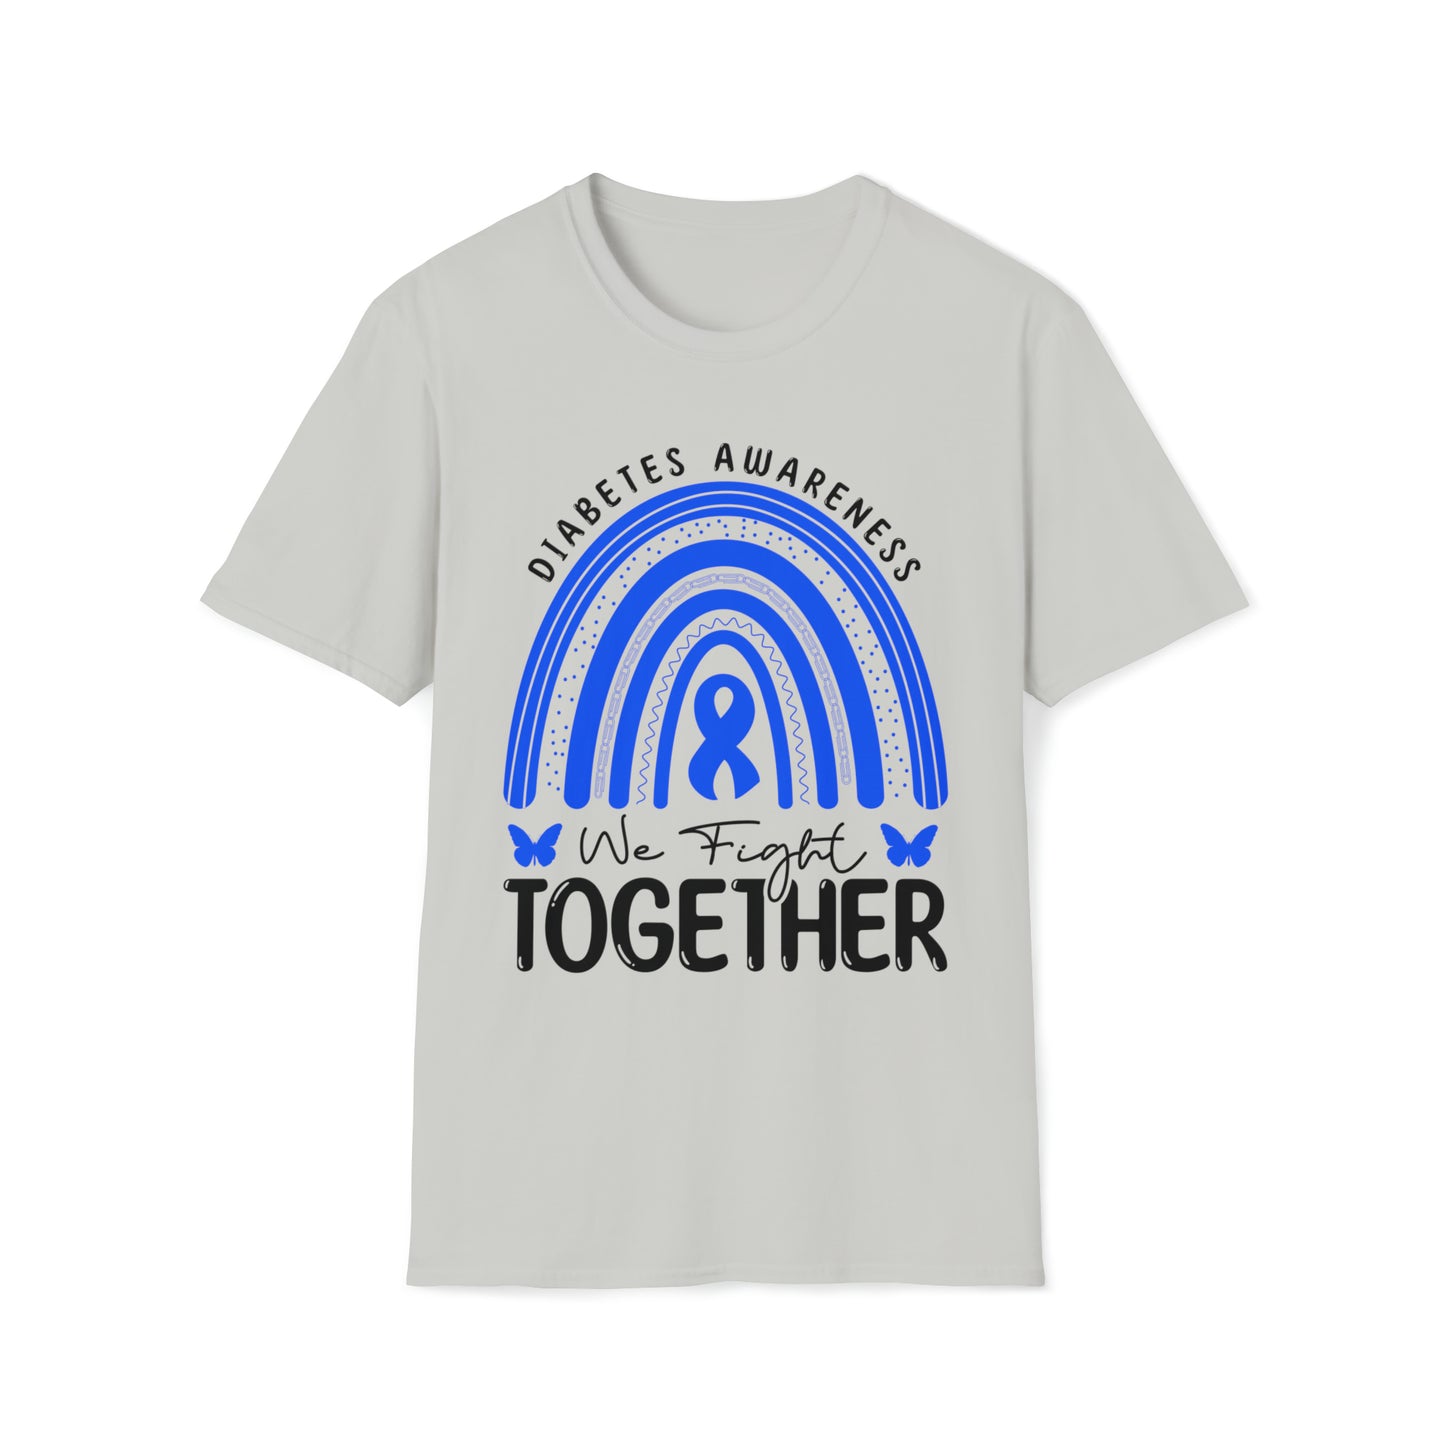 We Fight Together Diabetes Awareness Shirt